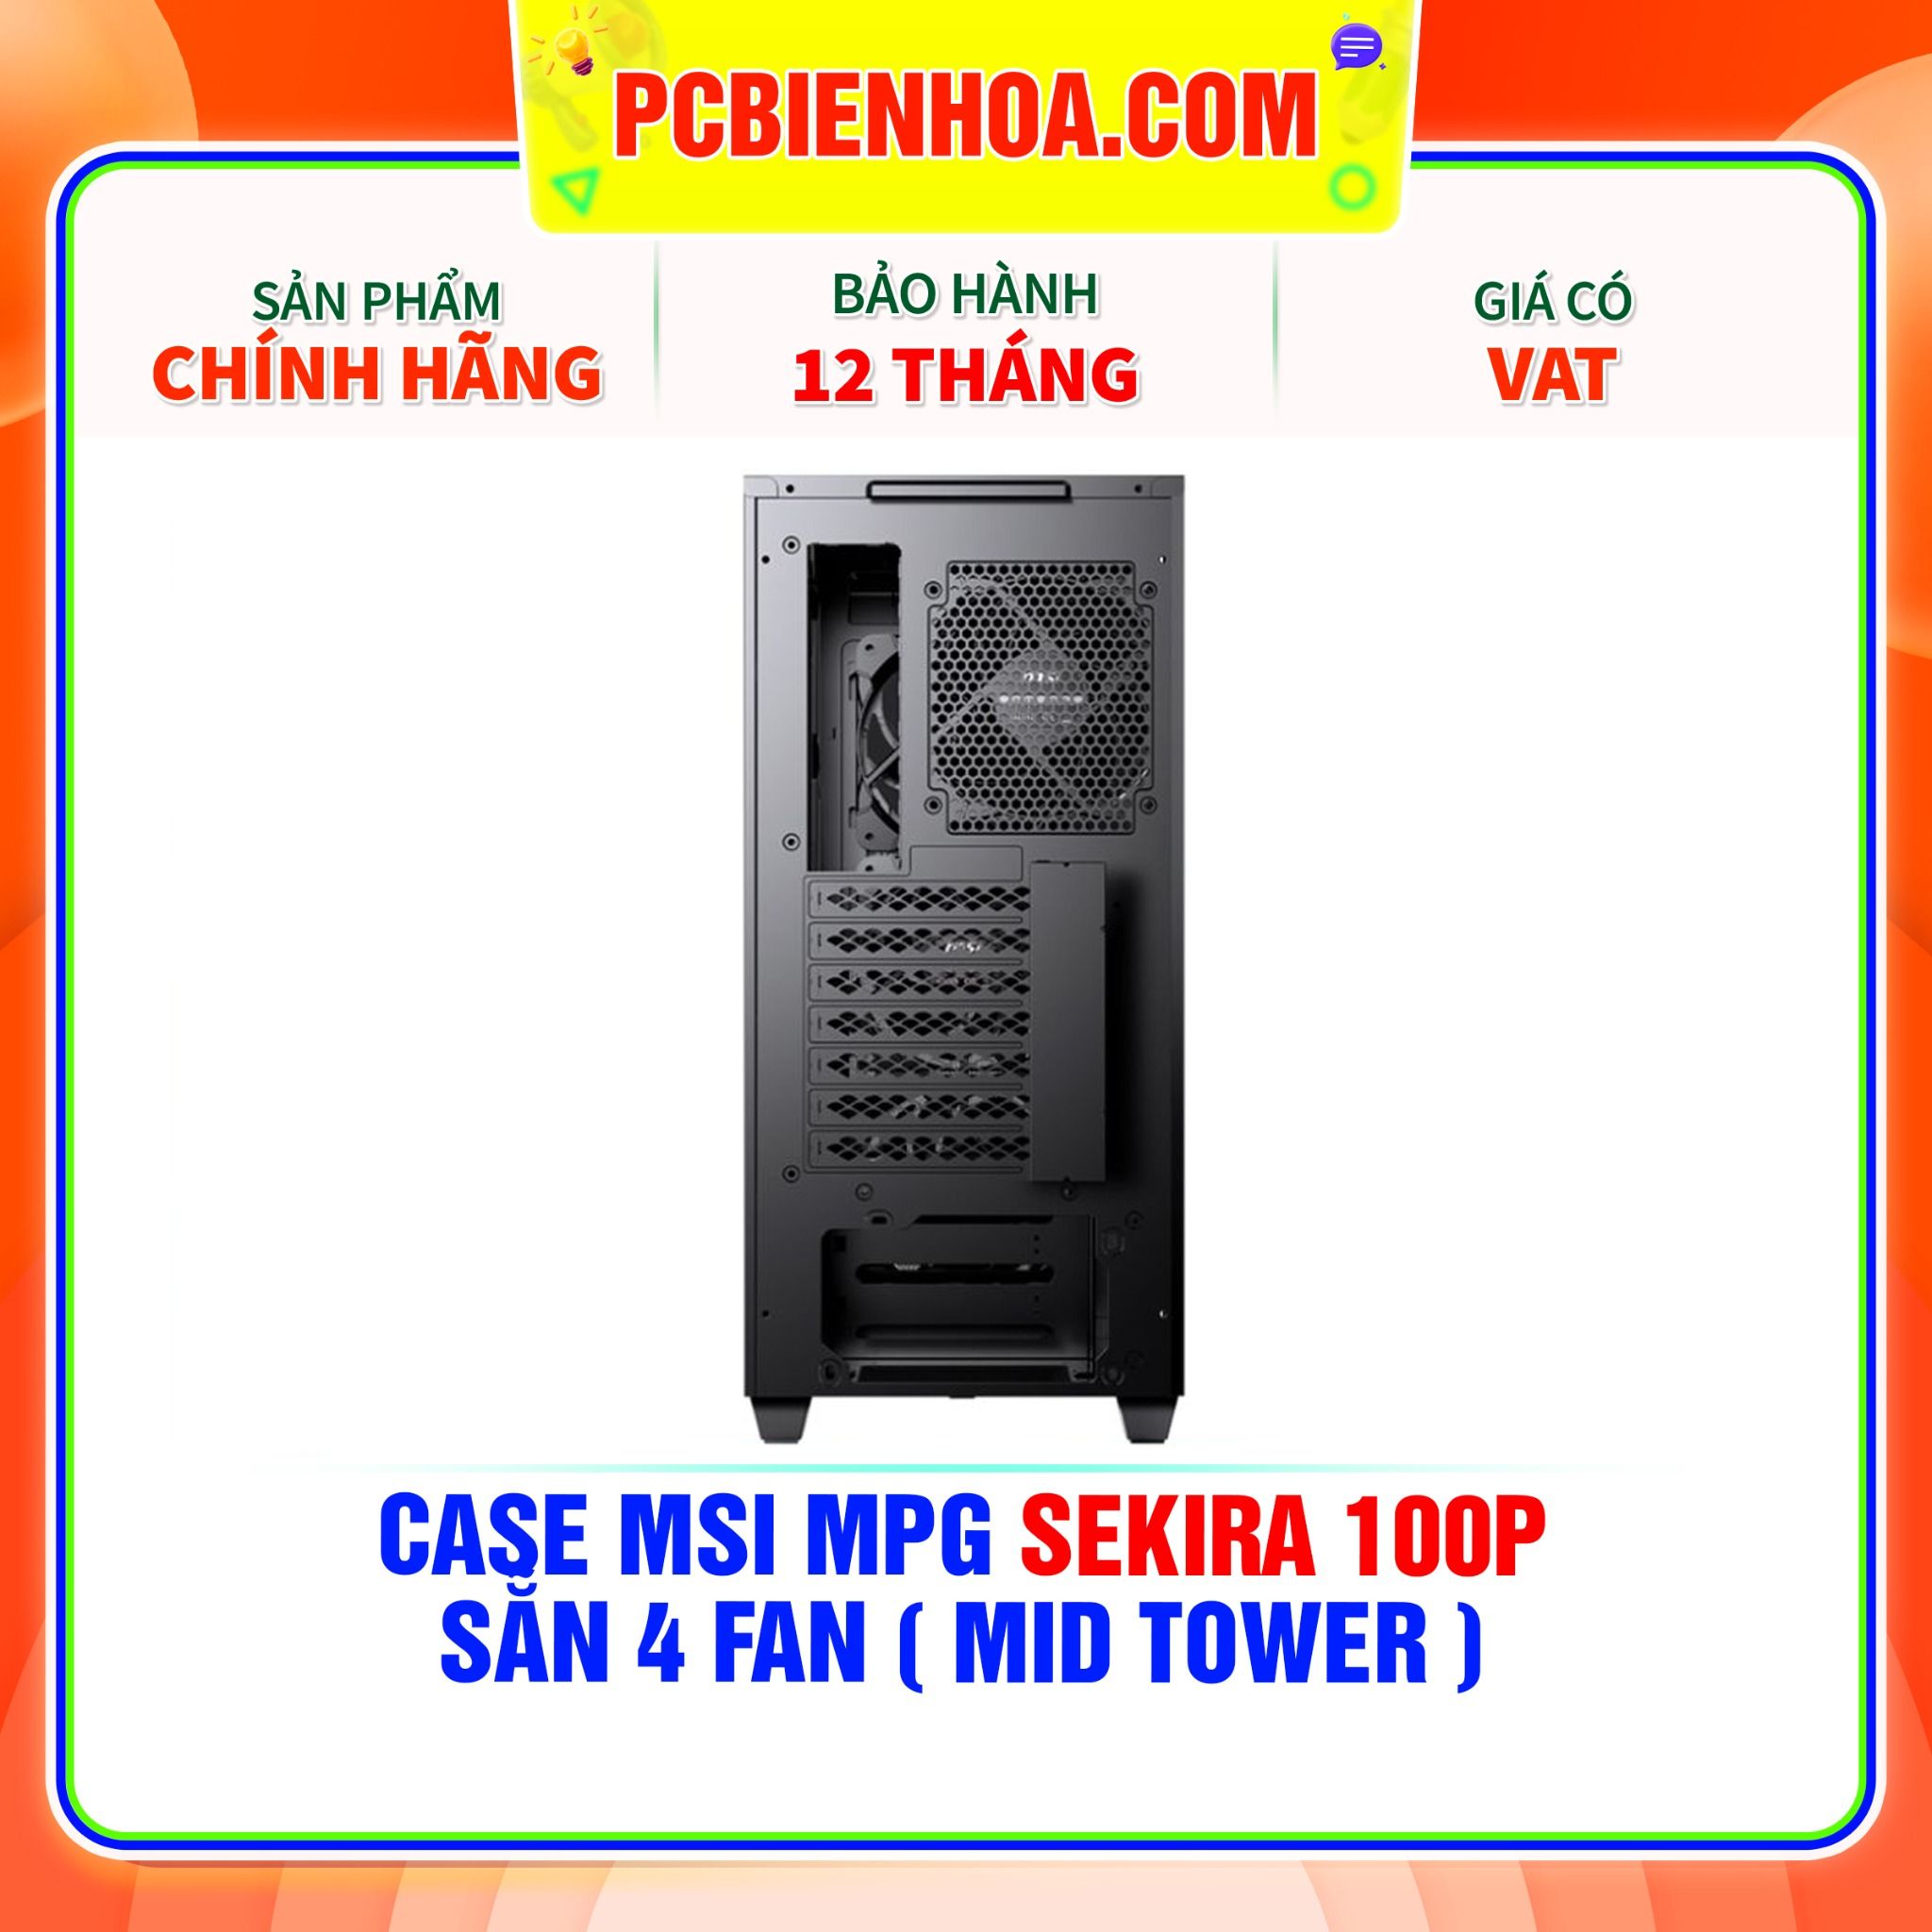  CASE MSI MPG SEKIRA 100P - SẴN 4 FAN ( MID TOWER ) 